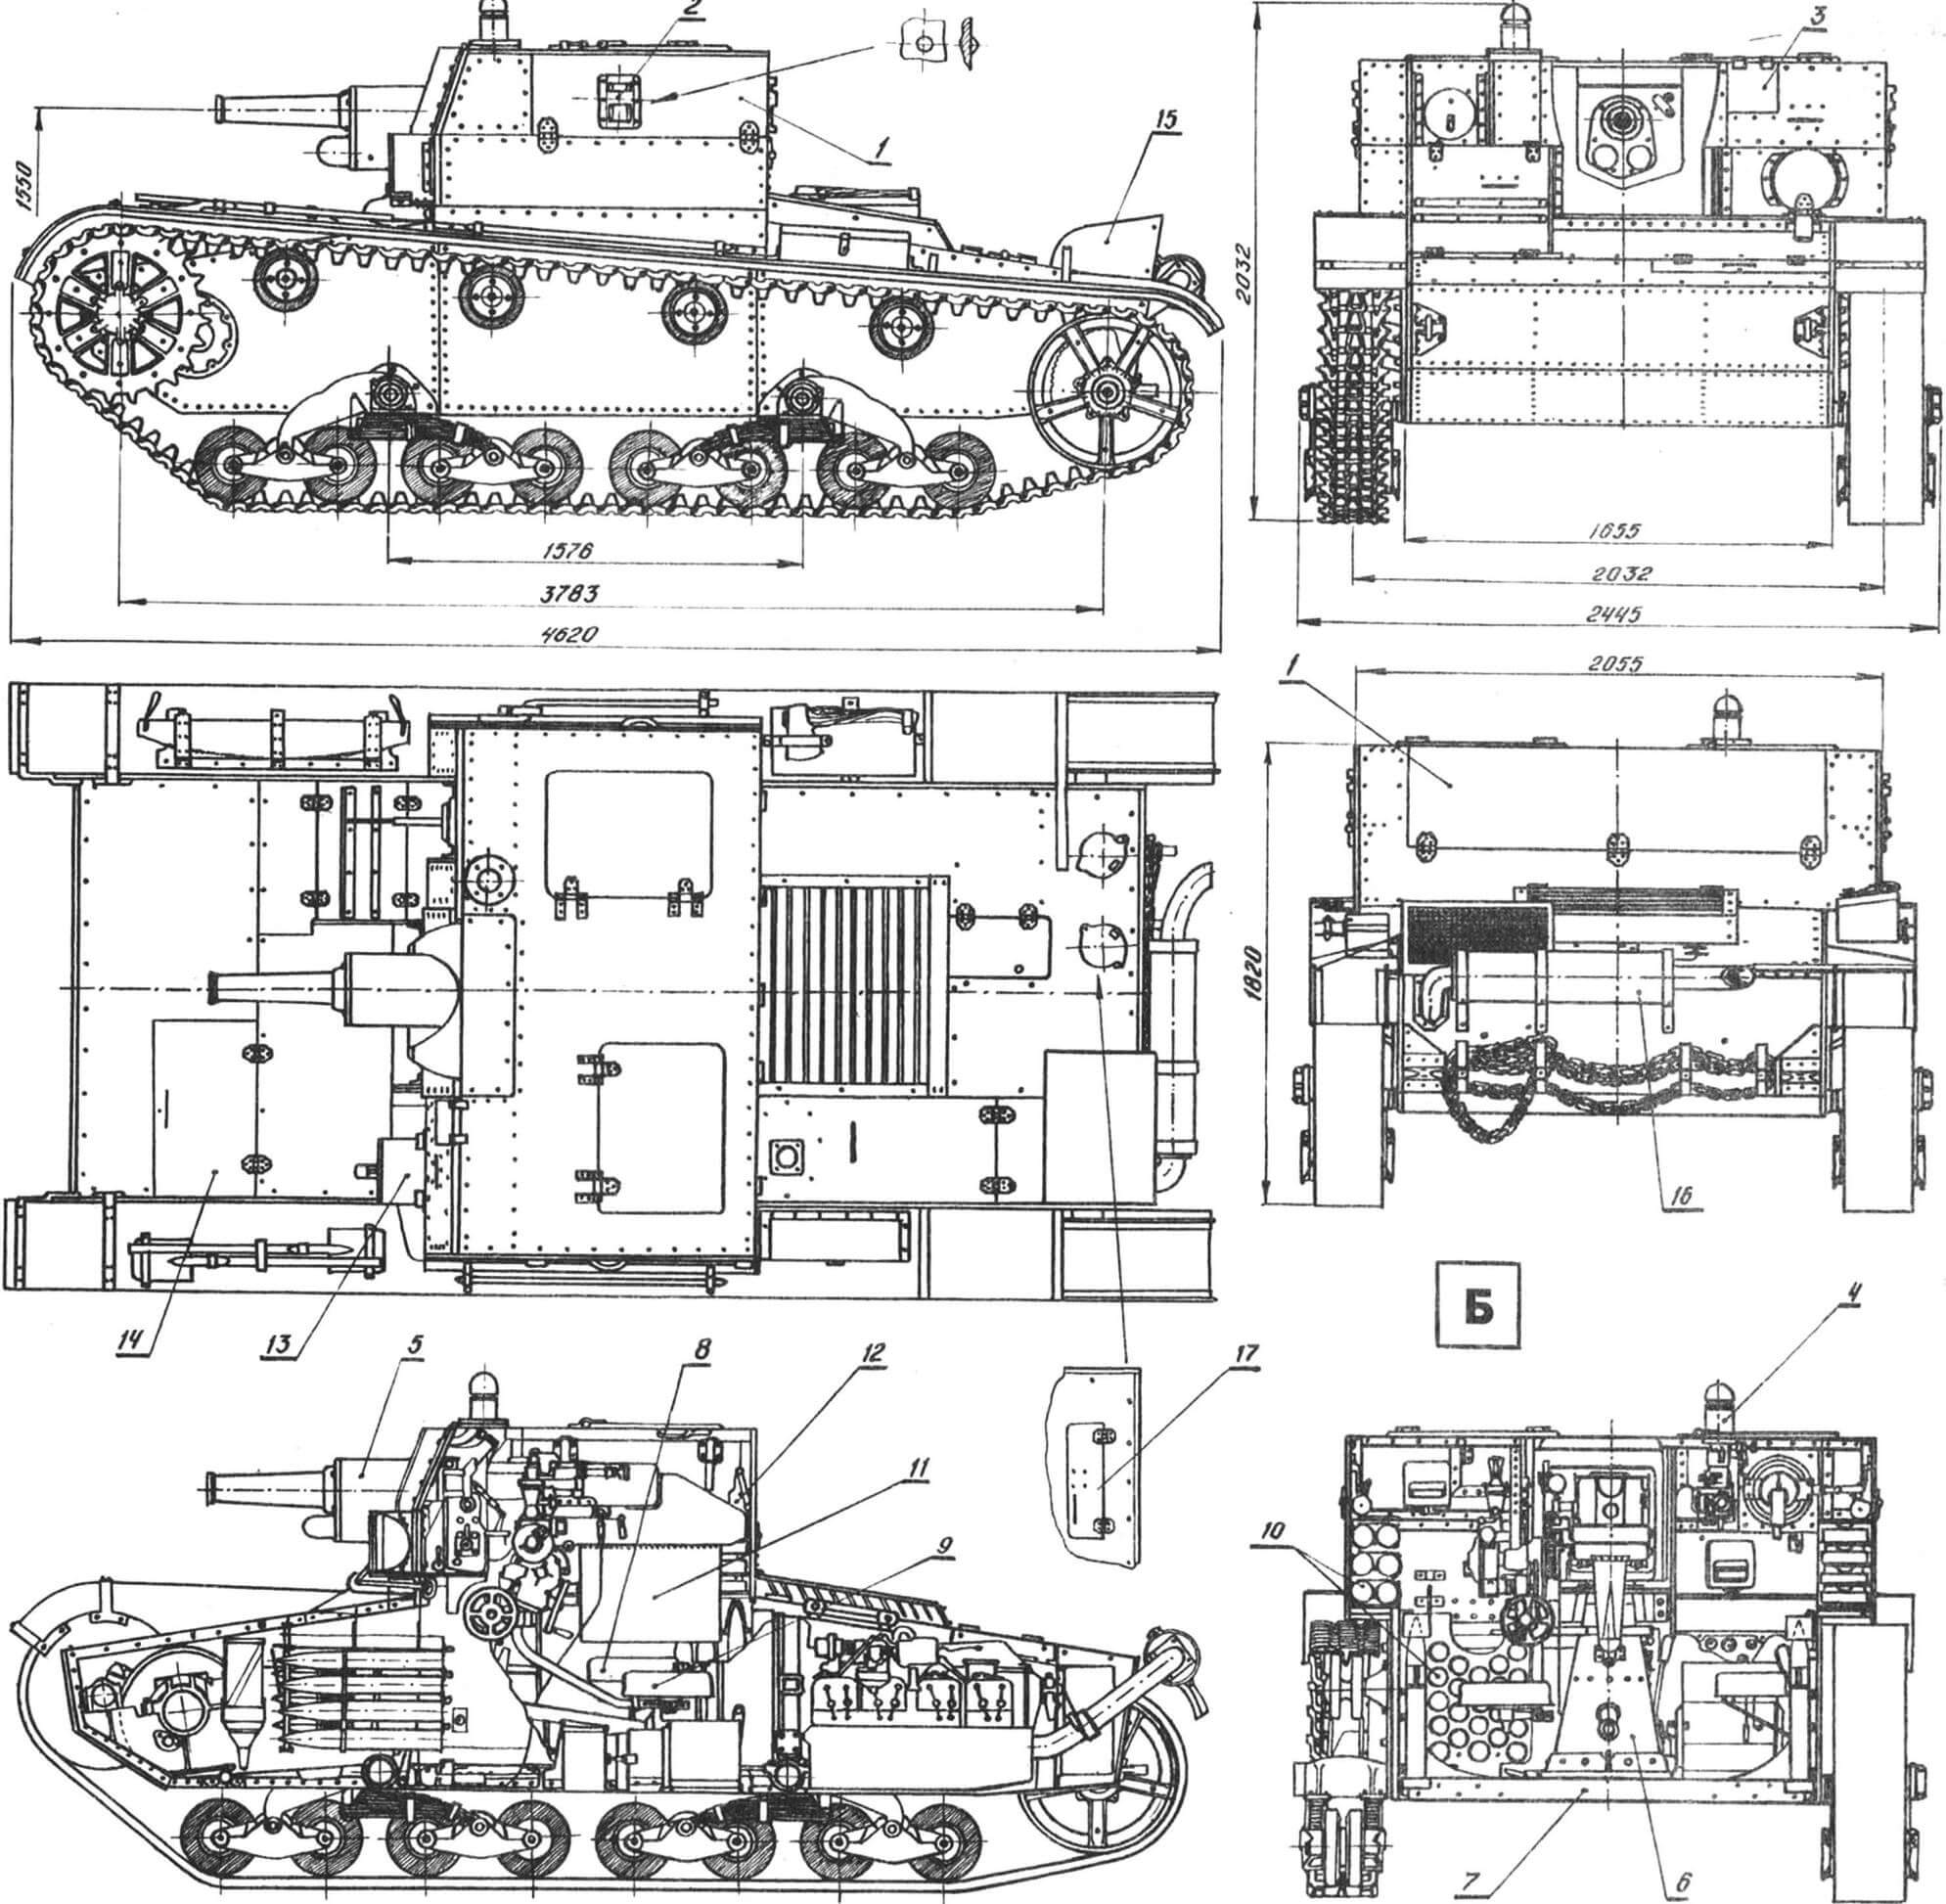 Легкий артиллерийский танк с раскрывающейся башней АТ-1. 1936 год (чертежи выполнены на основе проектной документации и фотографий опытных образцов АТ-1)